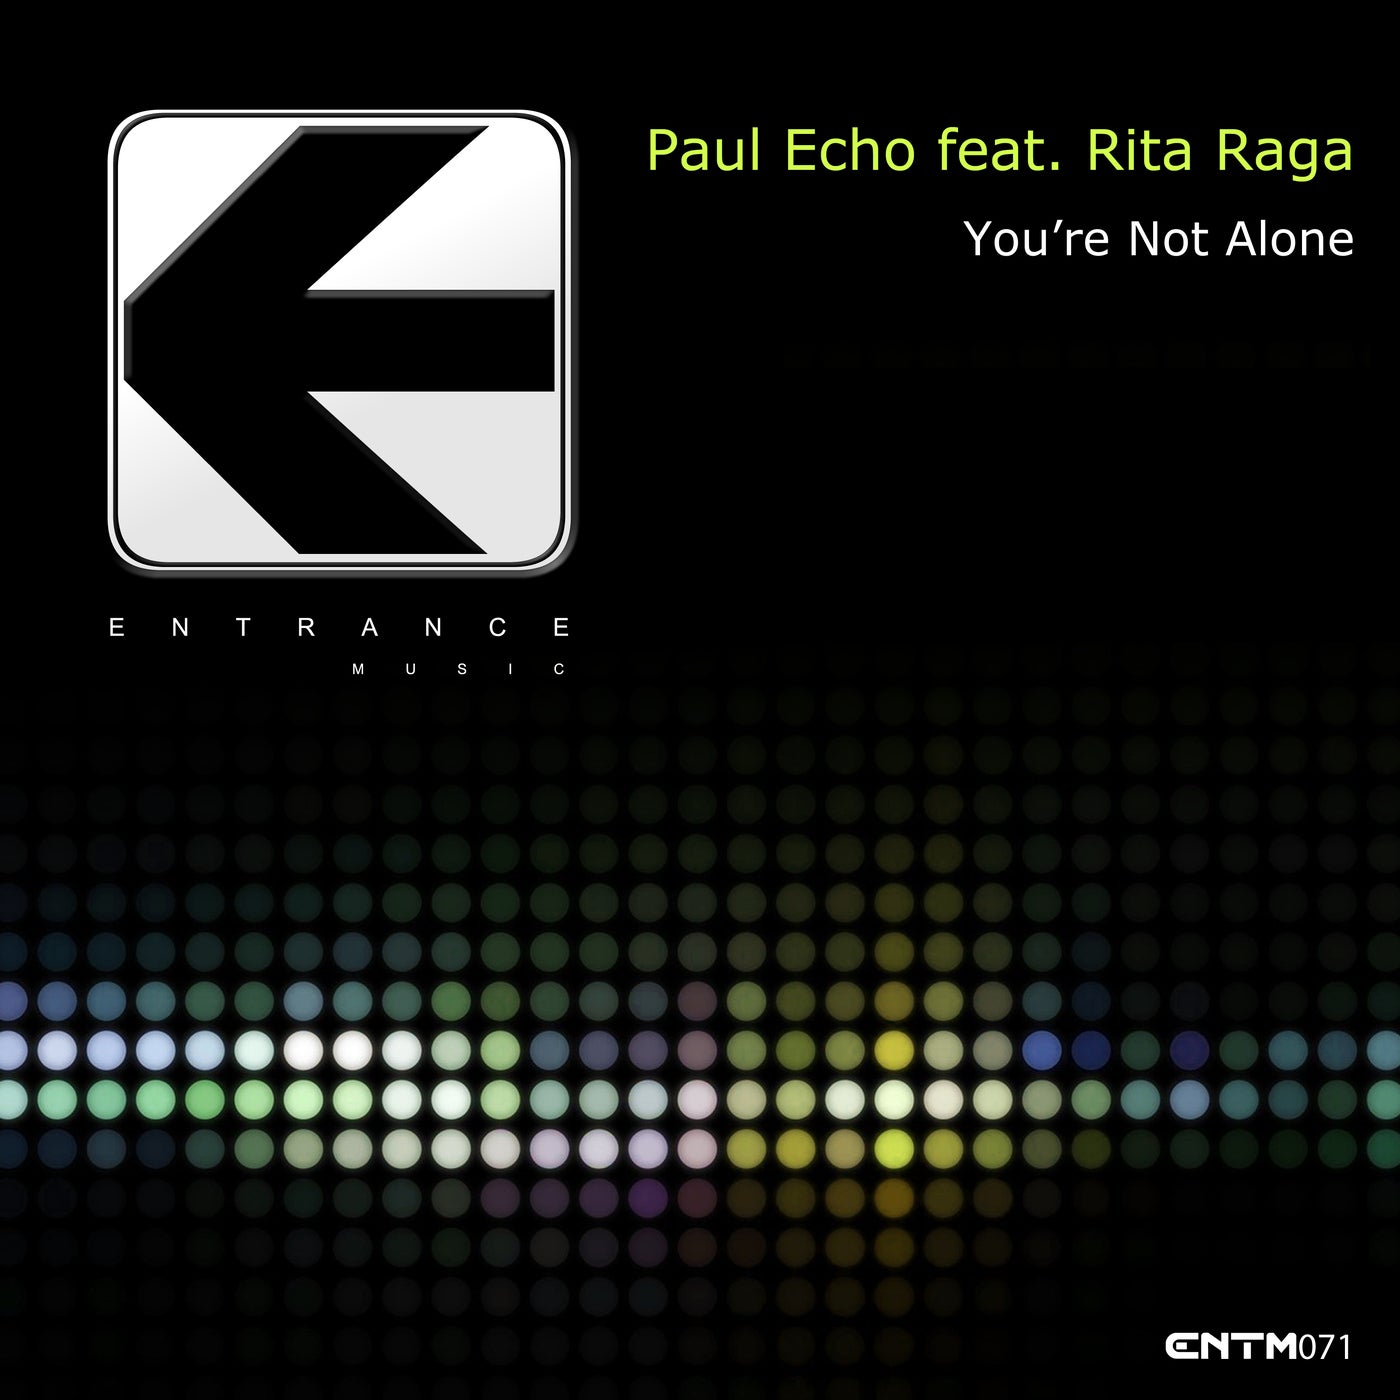 Paul Echo Feat. Rita Raga - You're Not Alone (Original Mix)